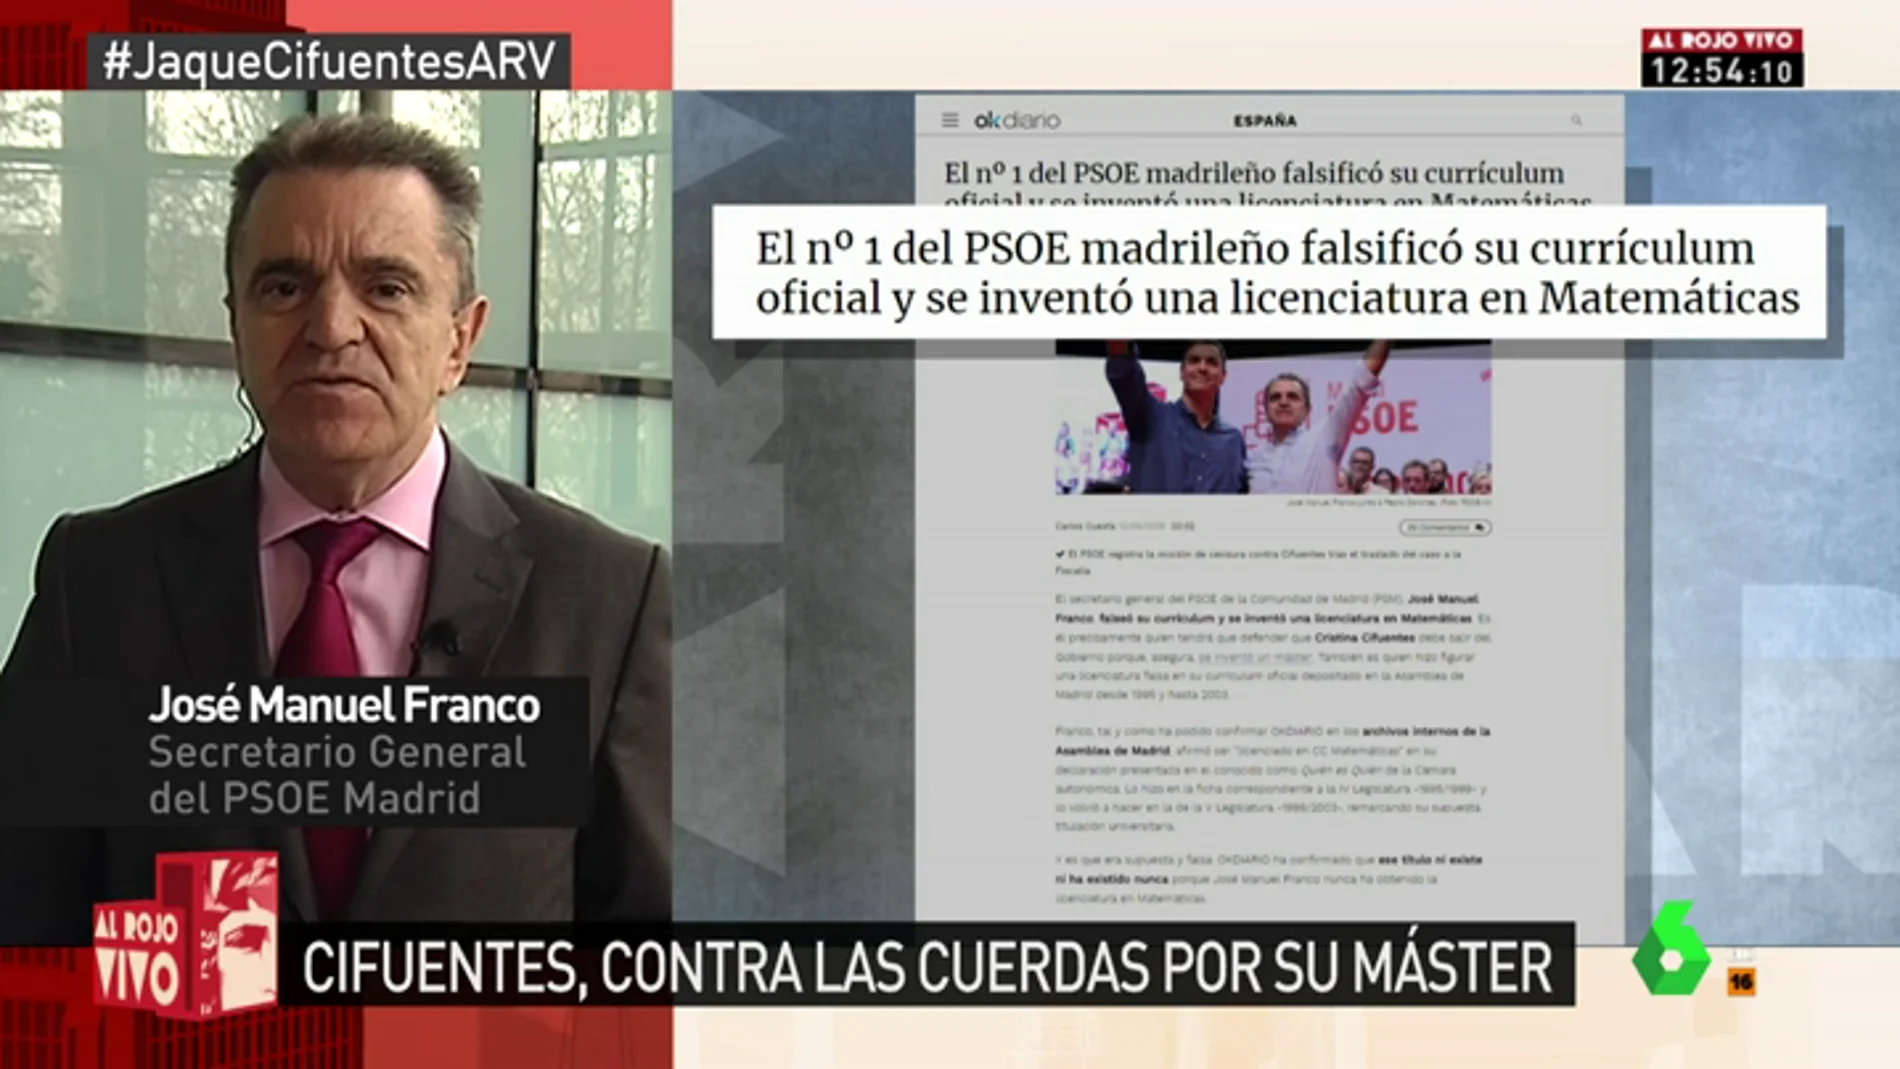 José Manuel Franco, tras la polémica con su currículum: "Fue un error que se corrigió hace más de 15 años"